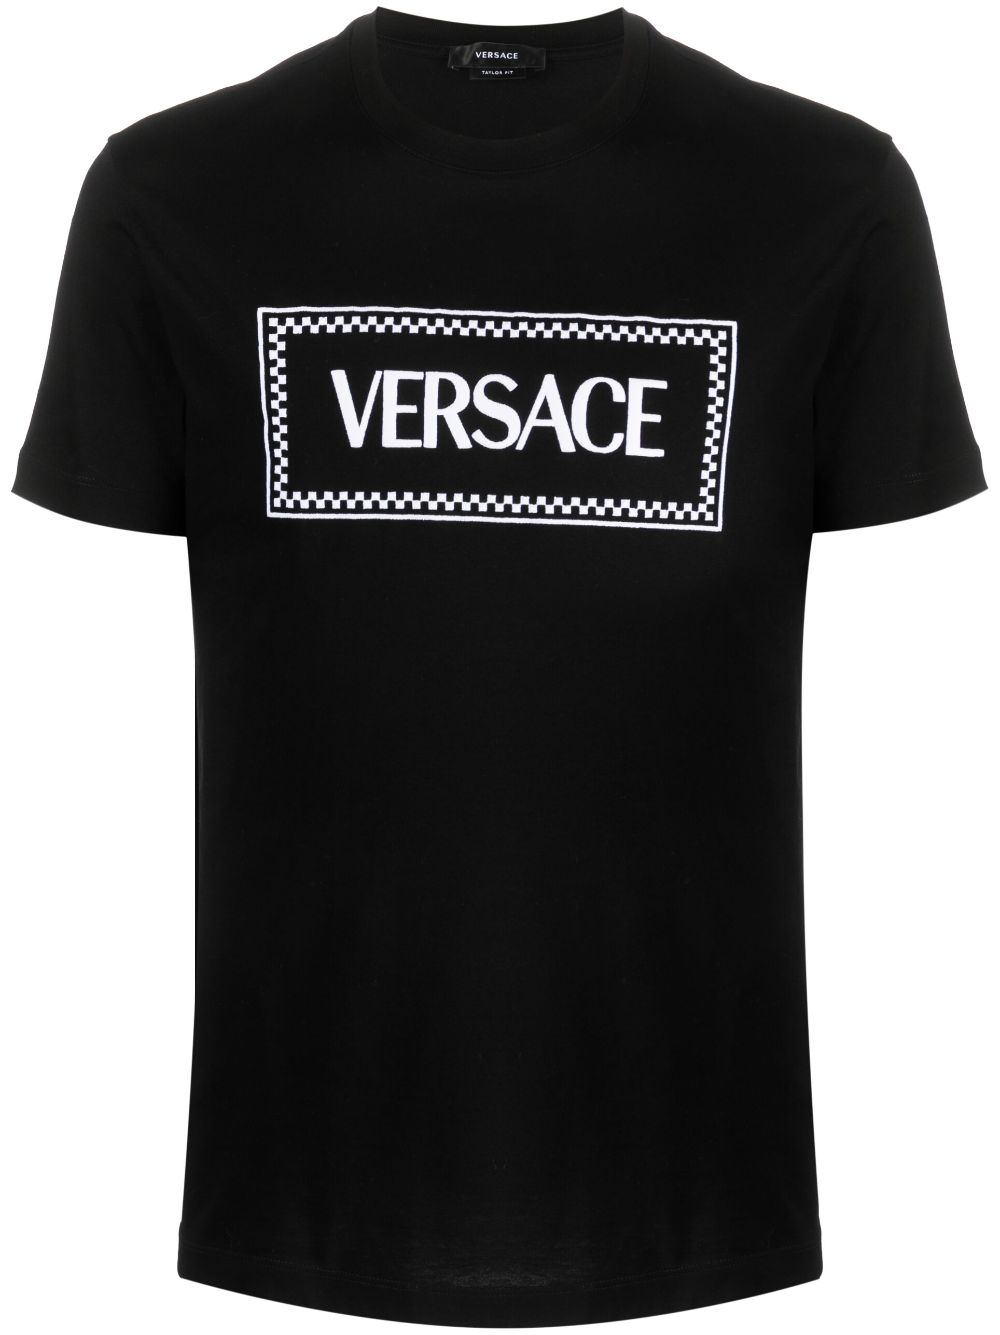 VERSACE Classic Black Cotton T-Shirt for Men